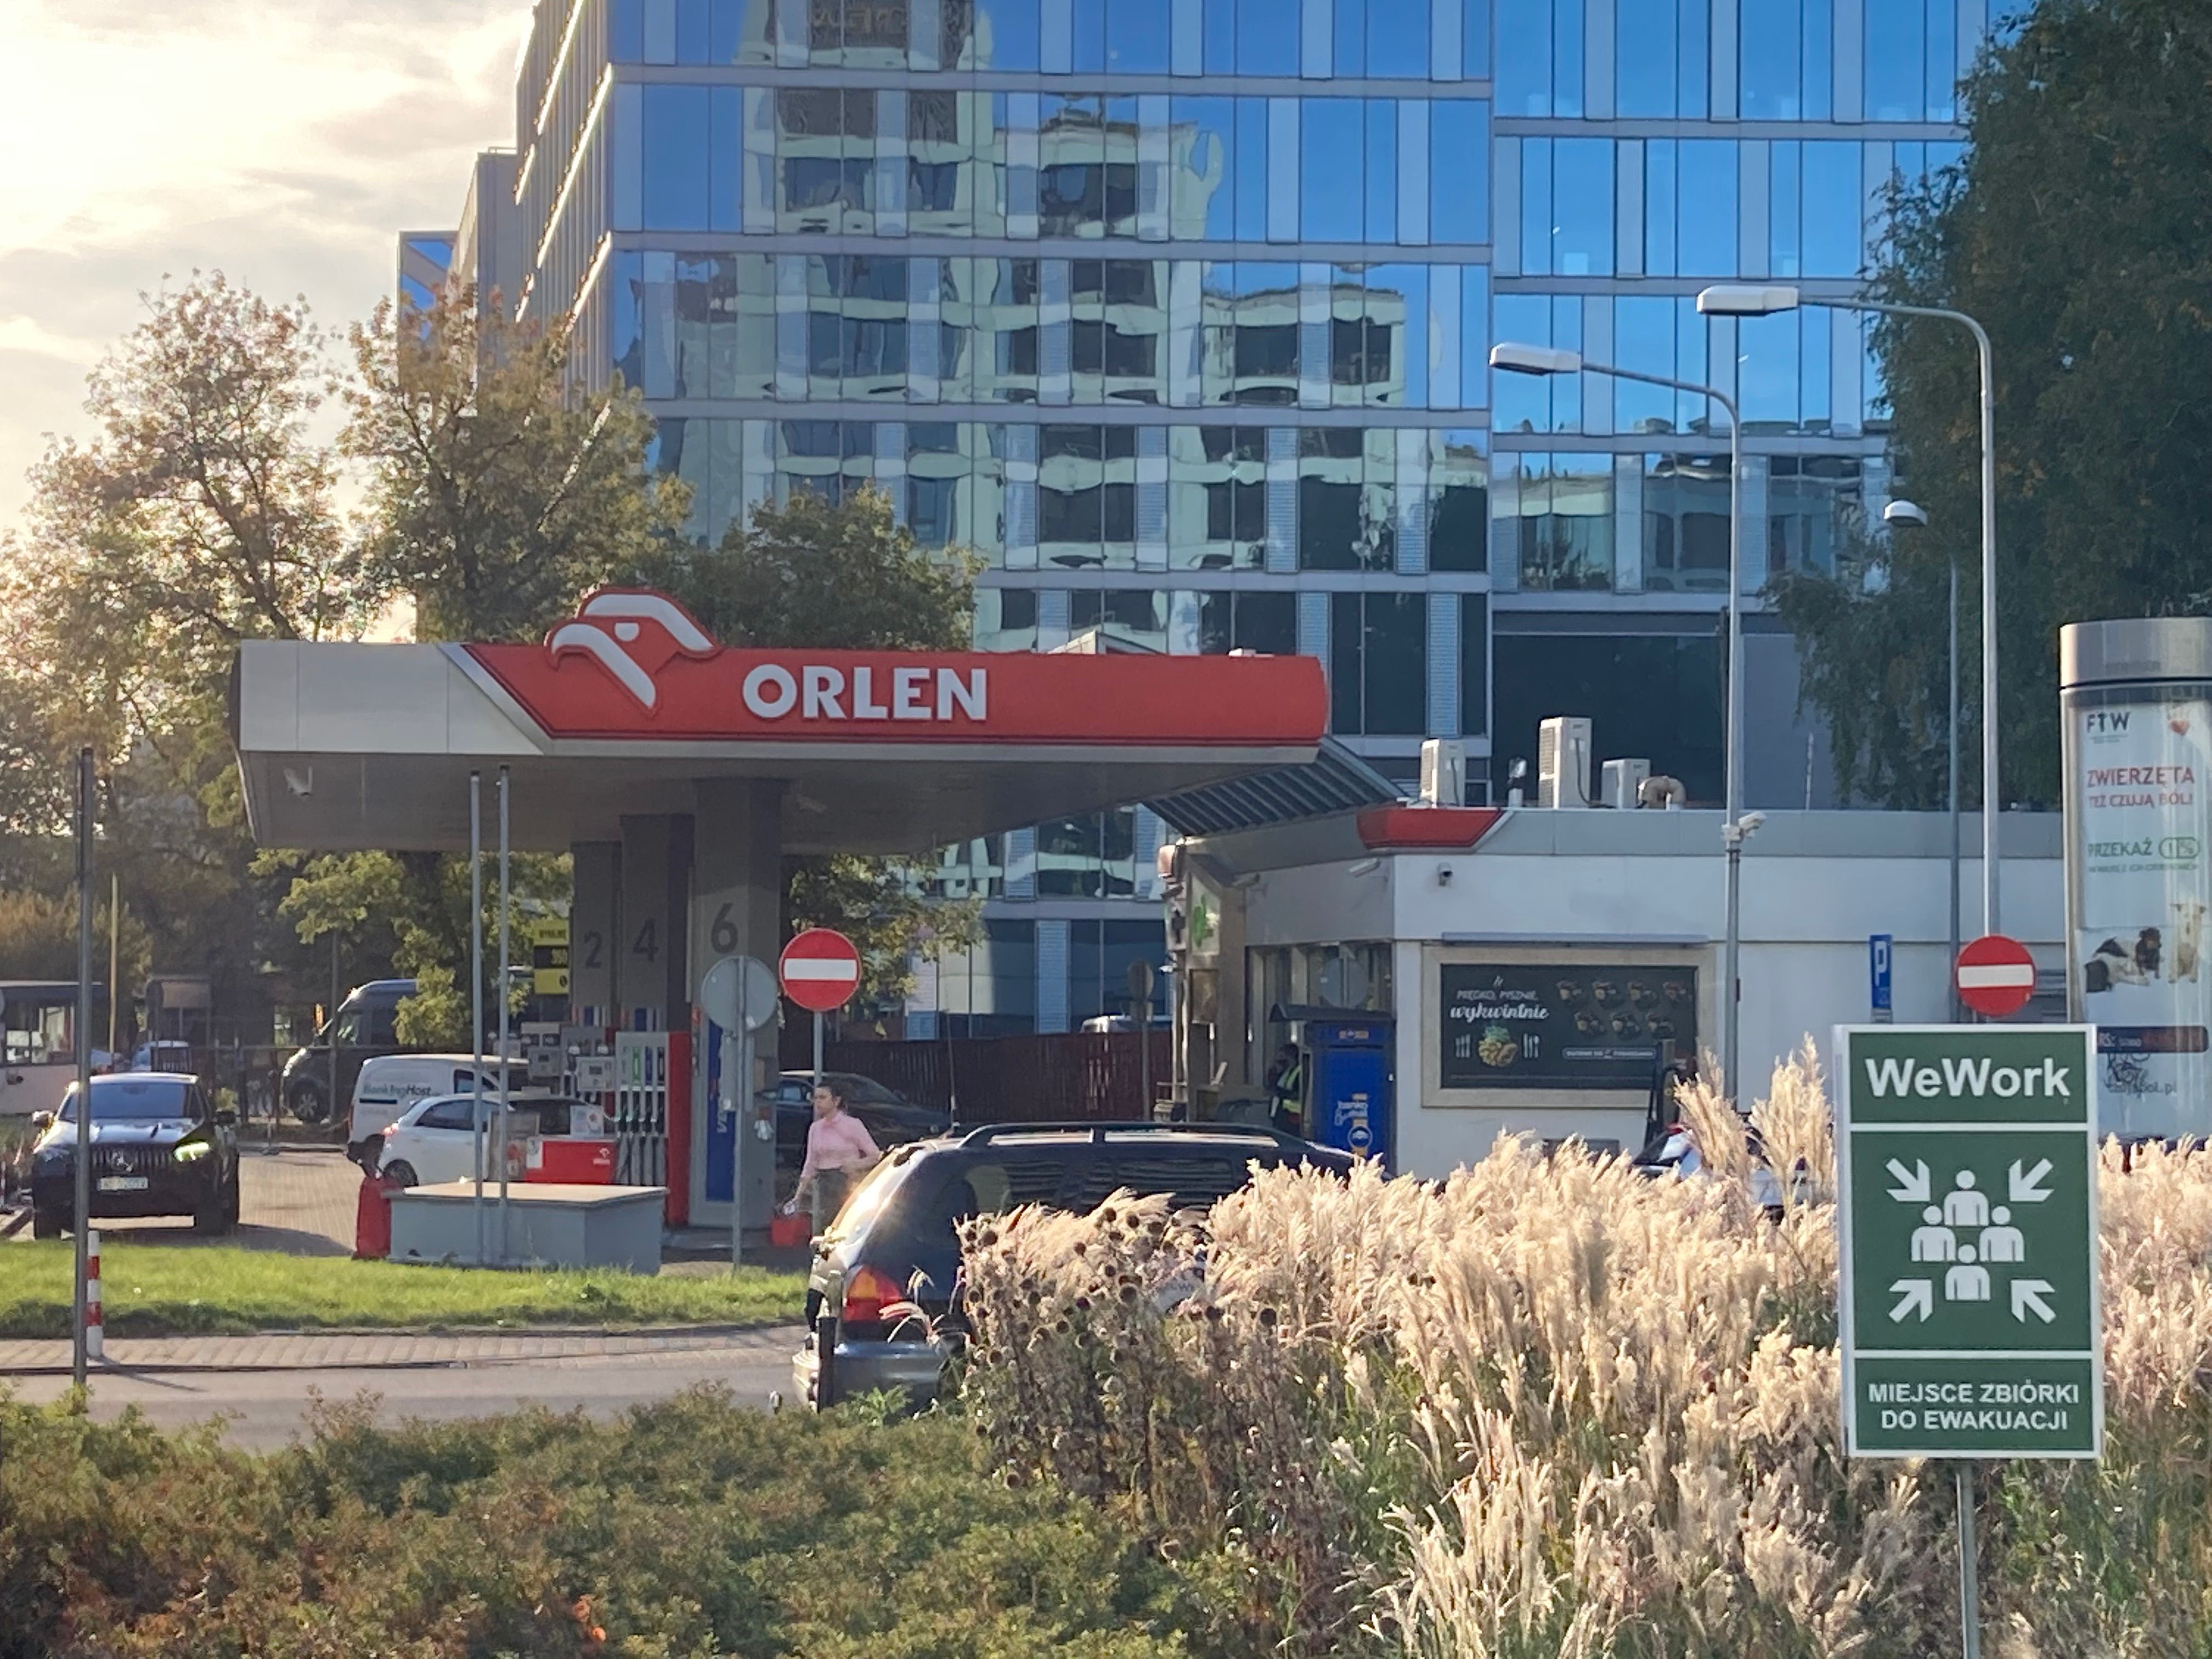 Orlen-stacja benzynowa-paliwo-ceny paliwa